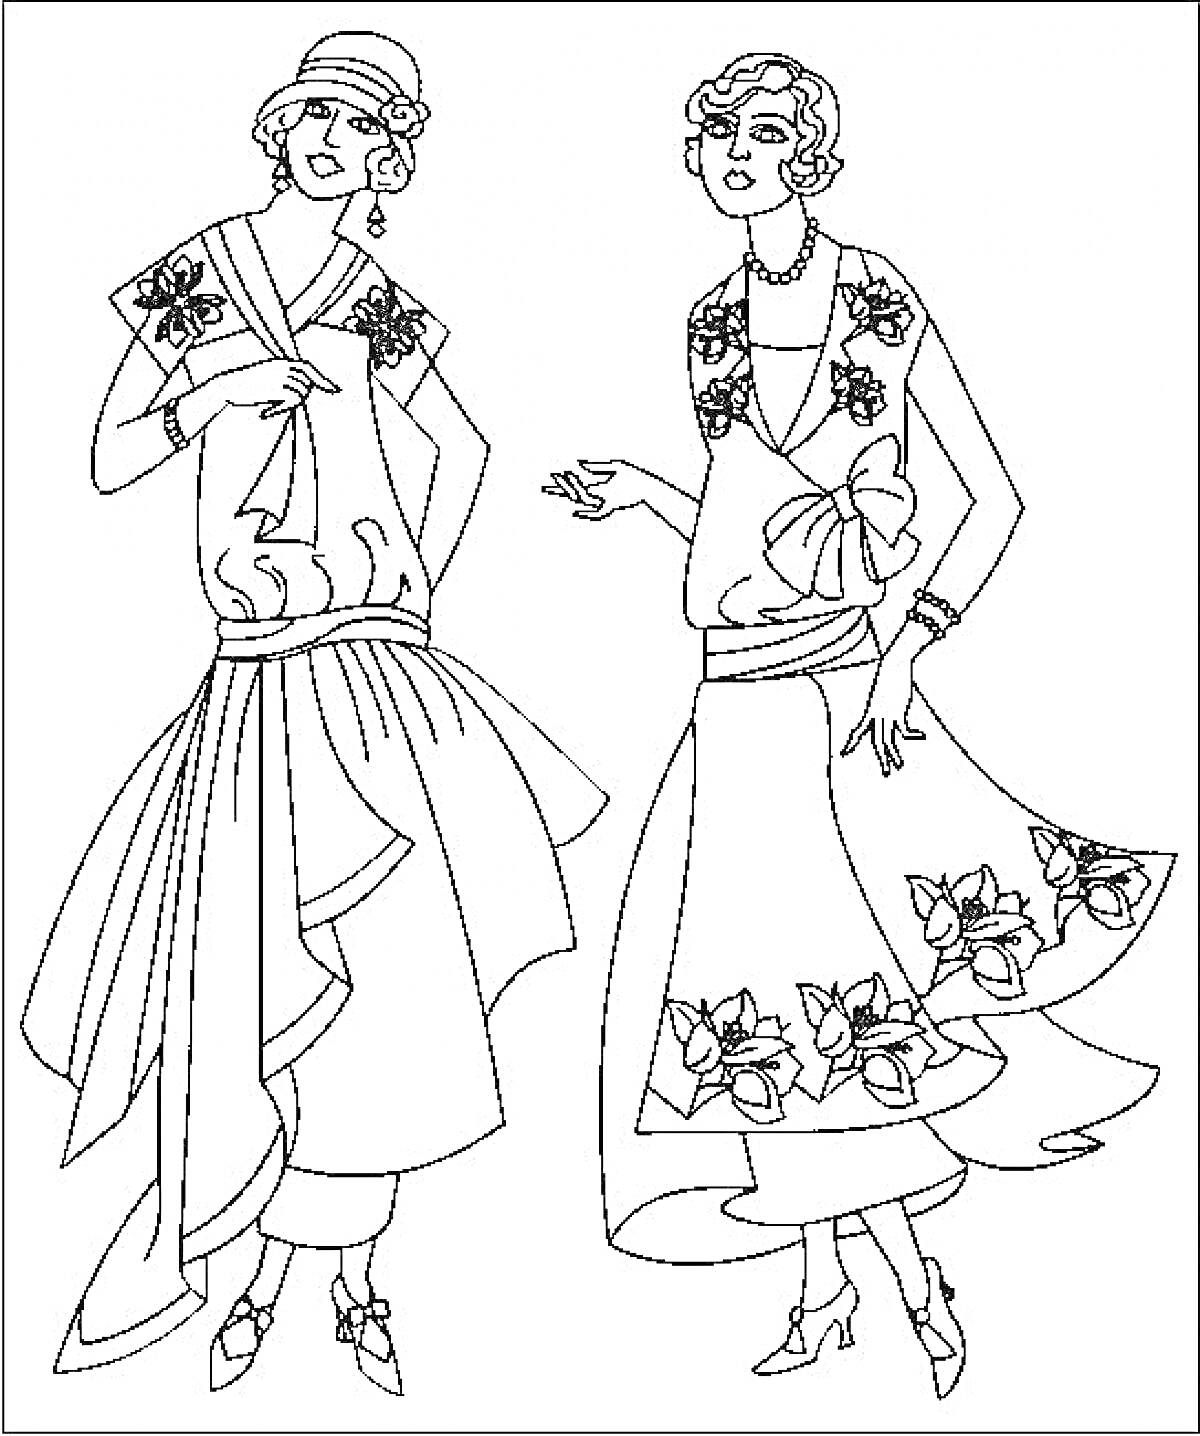 Раскраска Две топ-модели в элегантных платьях с цветочными узорами и шляпкам, позирующие для фотосессии